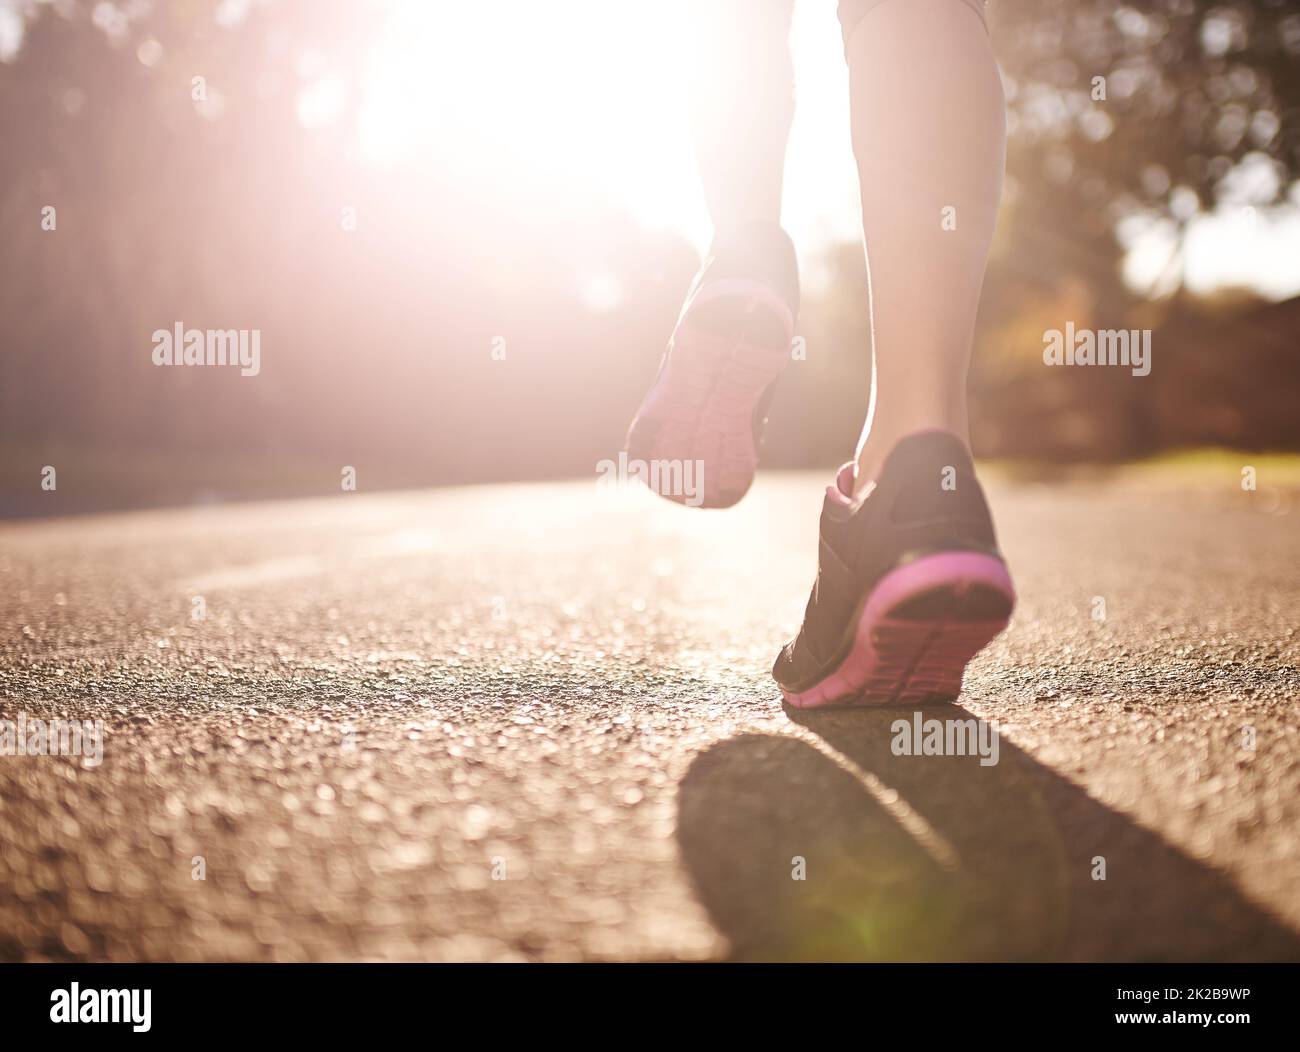 Trainieren Sie, wie es keine Ziellinie gibt. Kurze Aufnahme einer Frau, die sich für einen Lauf die Beine ausstreckt. Stockfoto